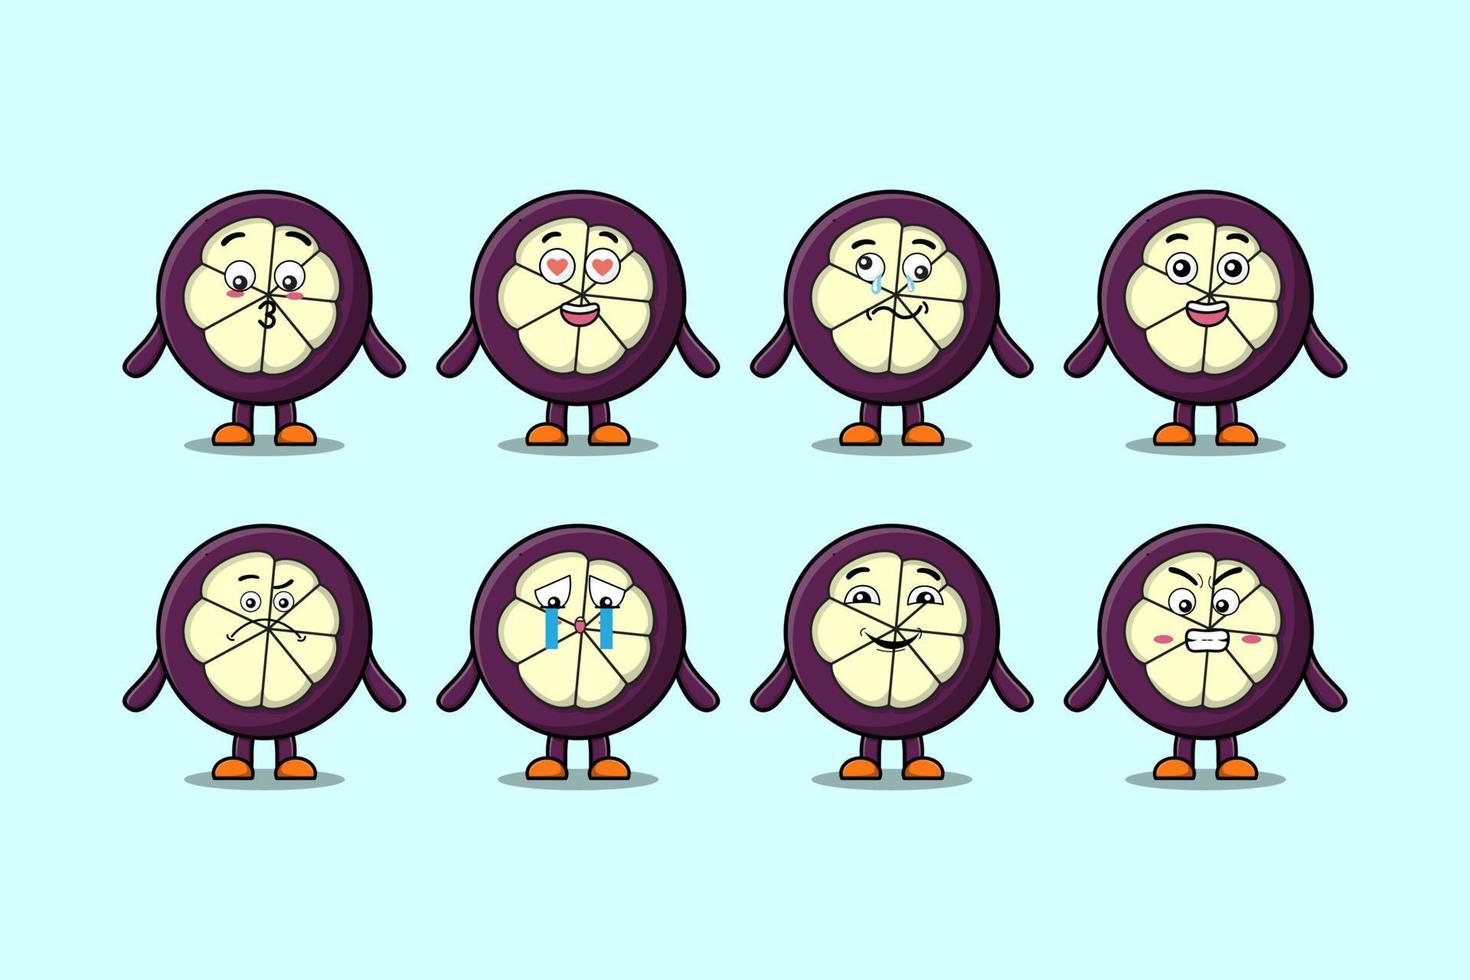 Set kawaii mangoustan dessin animé avec des expressions vecteur